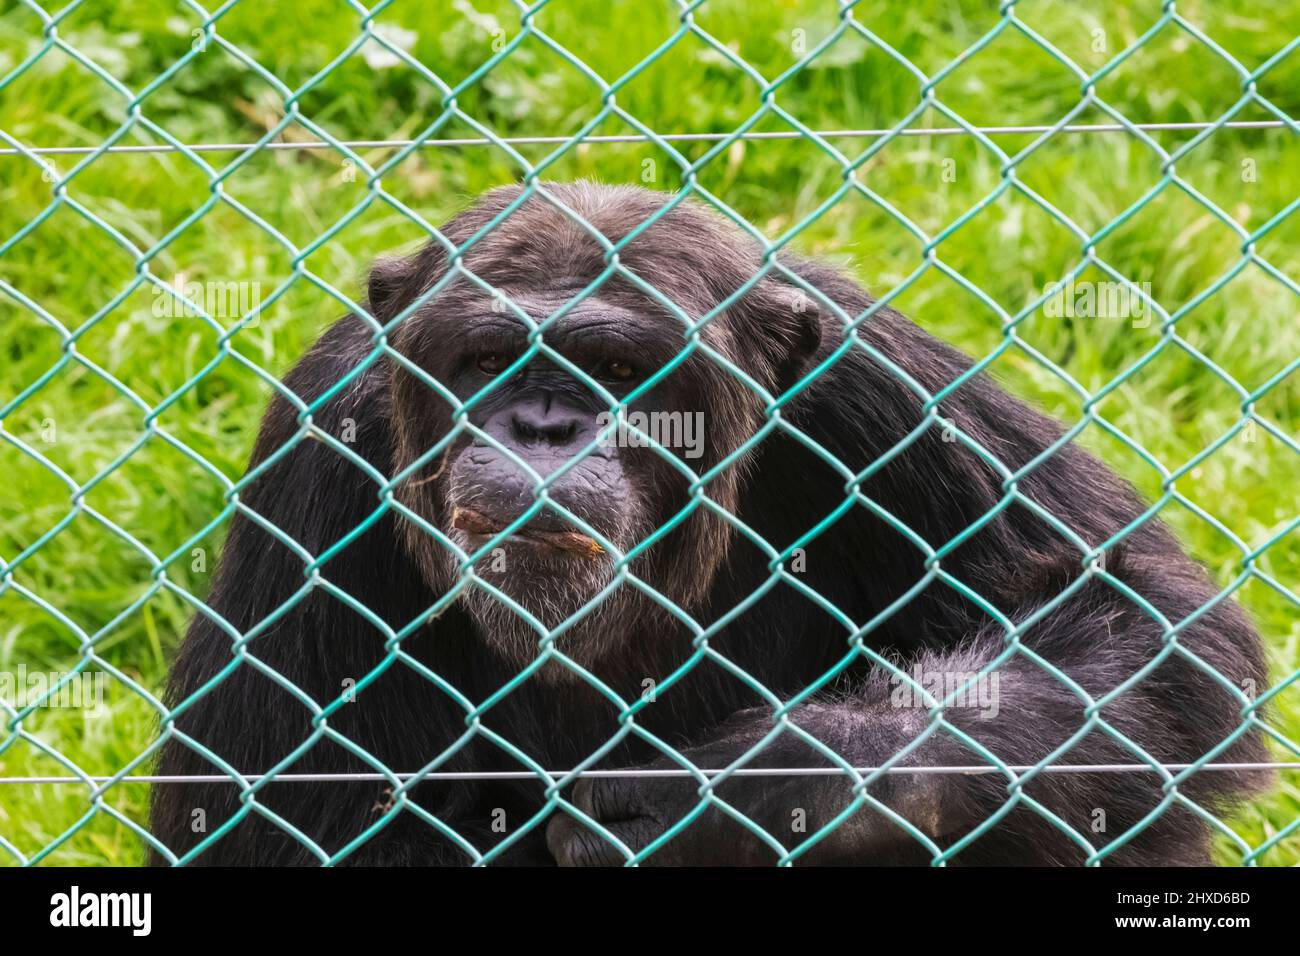 Angleterre, Dorset, Monkey World attraction, Chimpanzee derrière la clôture Banque D'Images